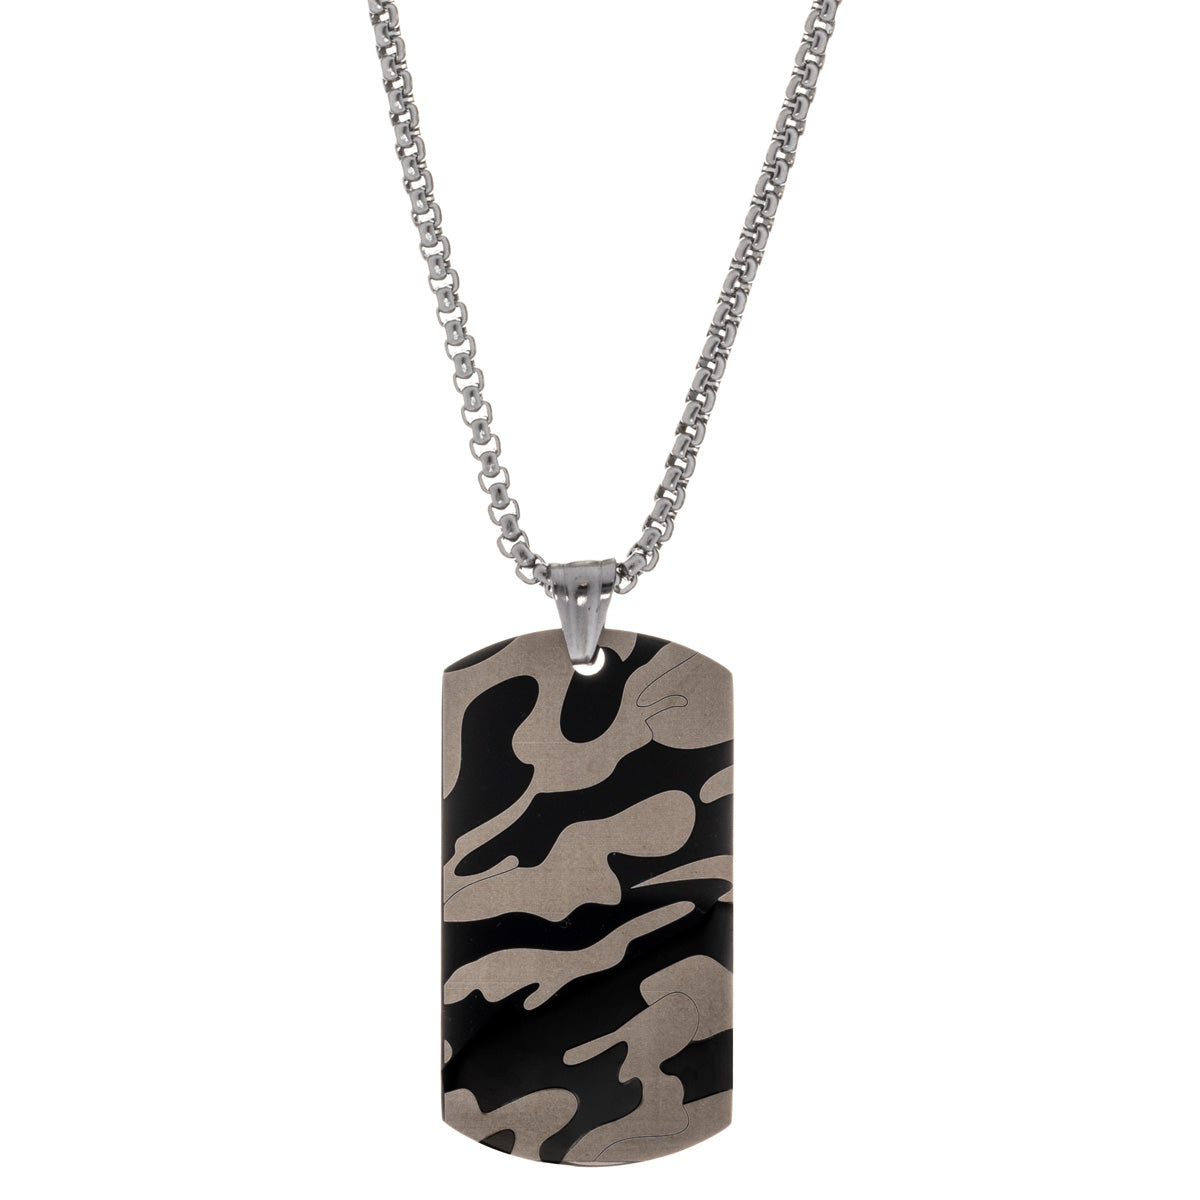 Camo tile pendant necklace 60cm (steel 316L)